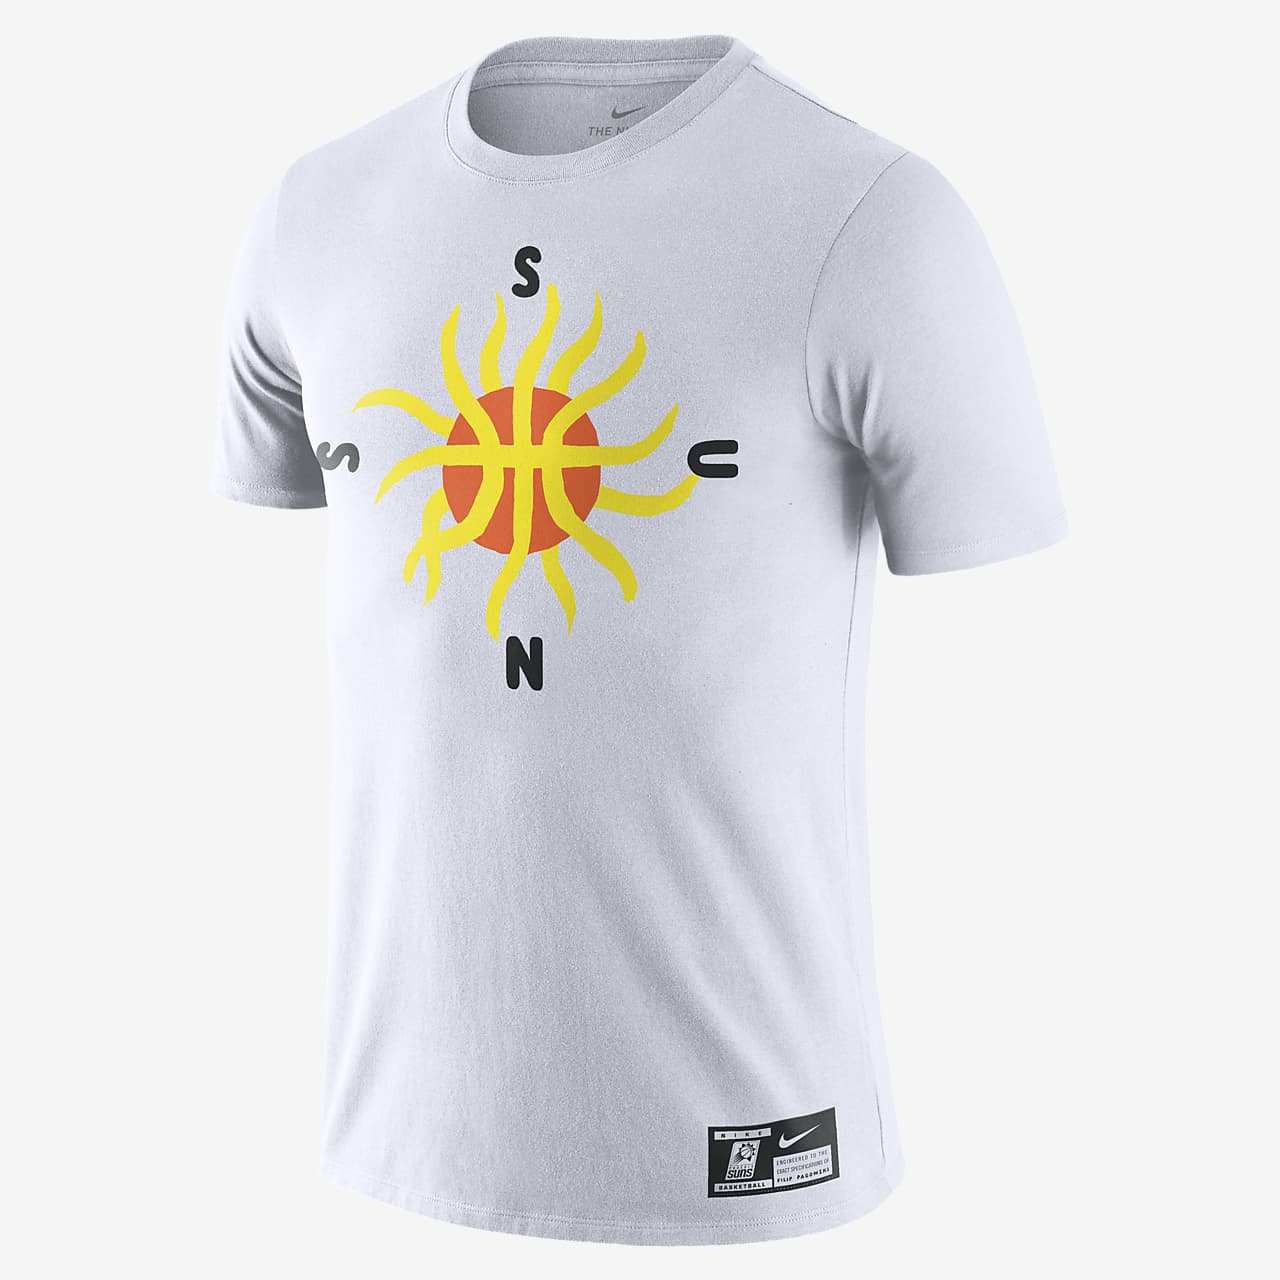 suns shirt